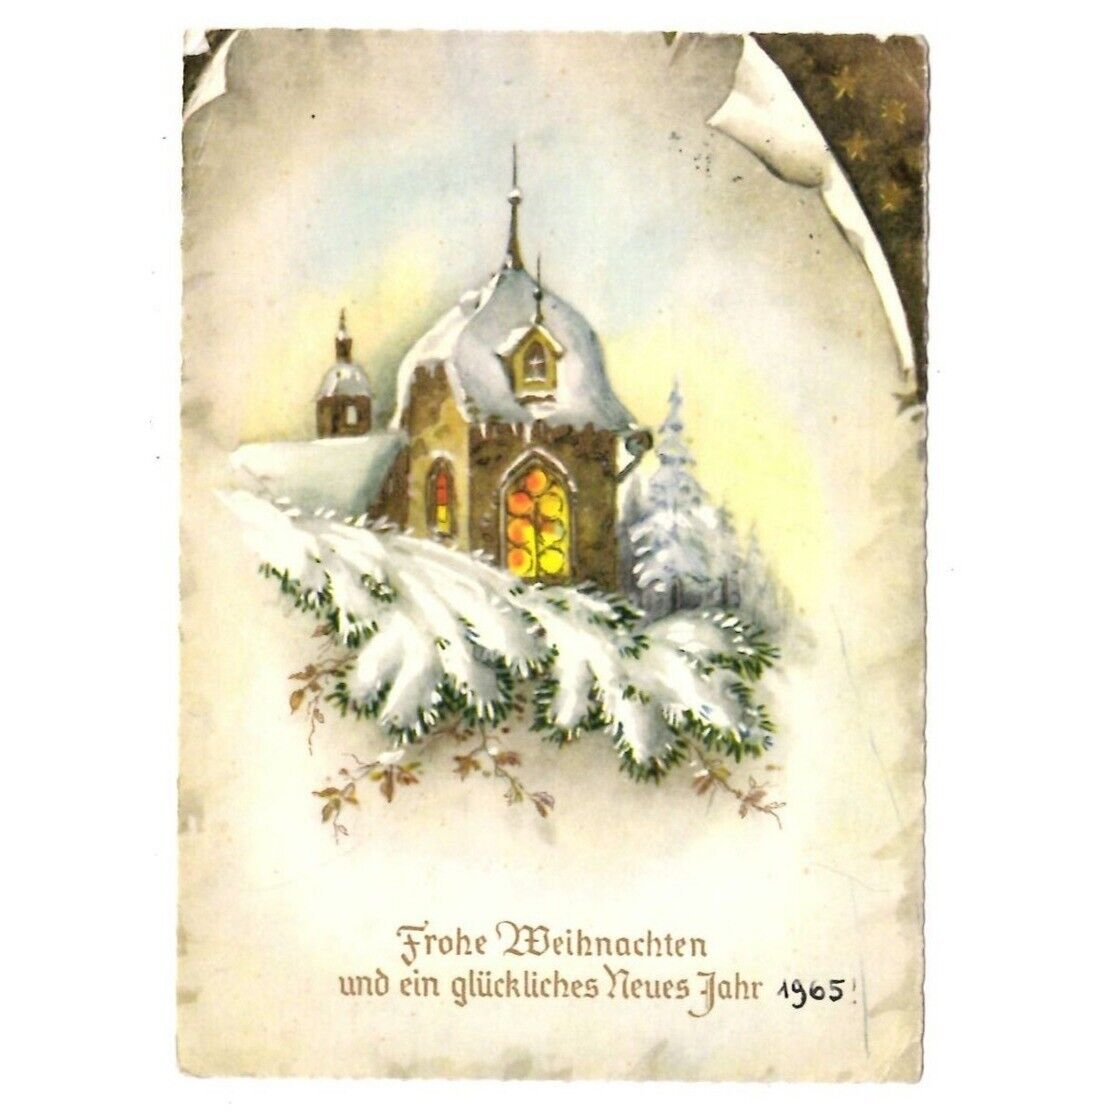 Postcard Frohe Weihnachten German Merry Christmas1964-1965 Gilt Pine Chapel